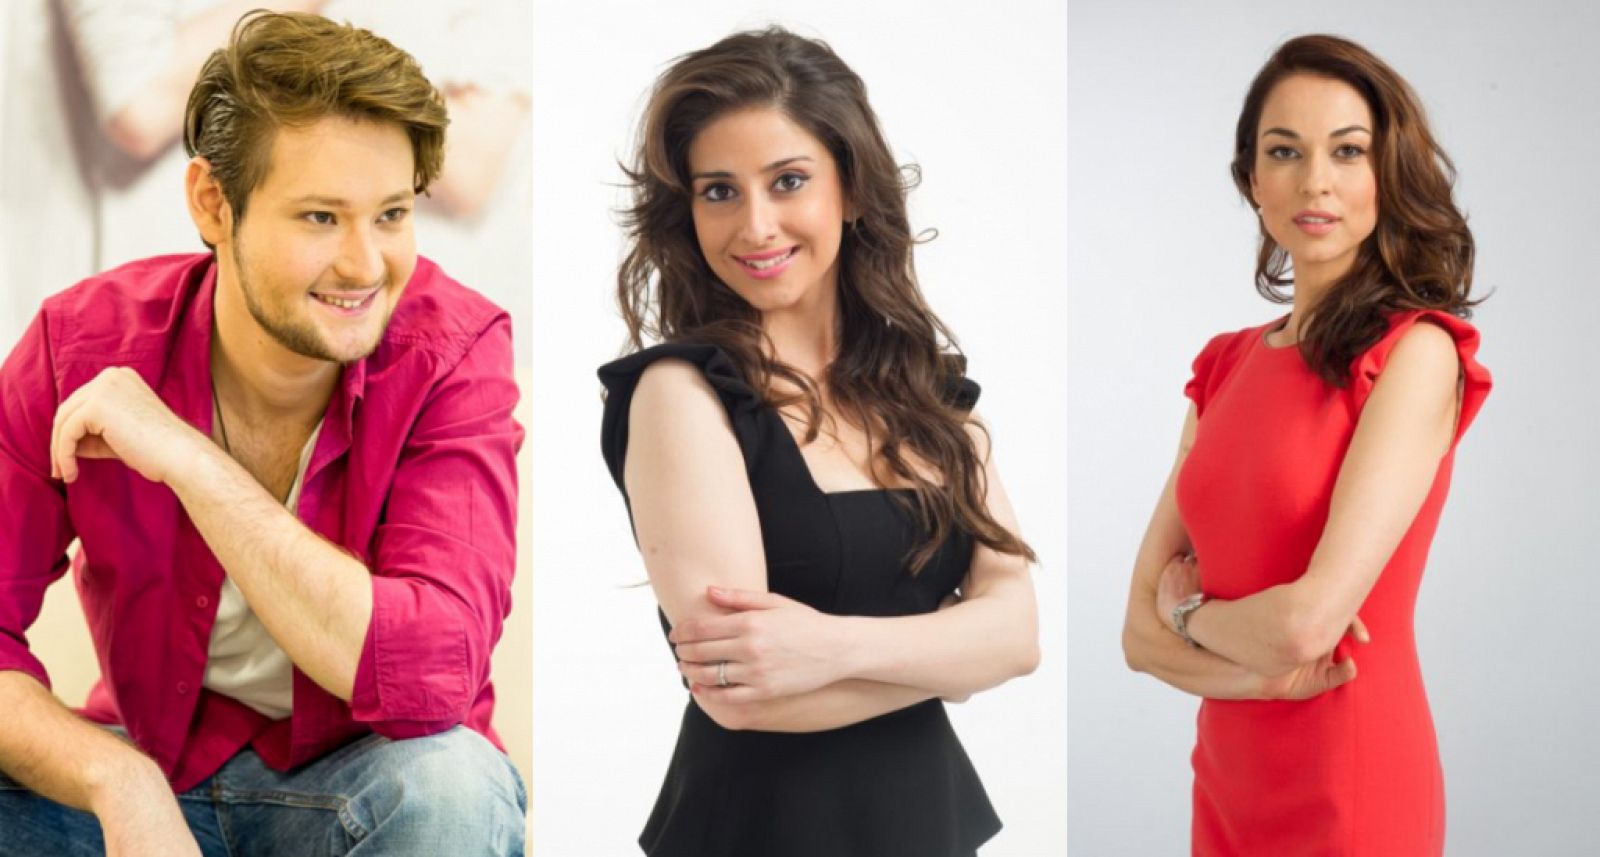 De izquierda a derecha: Eldar, Nargiz y Leyla, presentadores de Eurovisión 2012